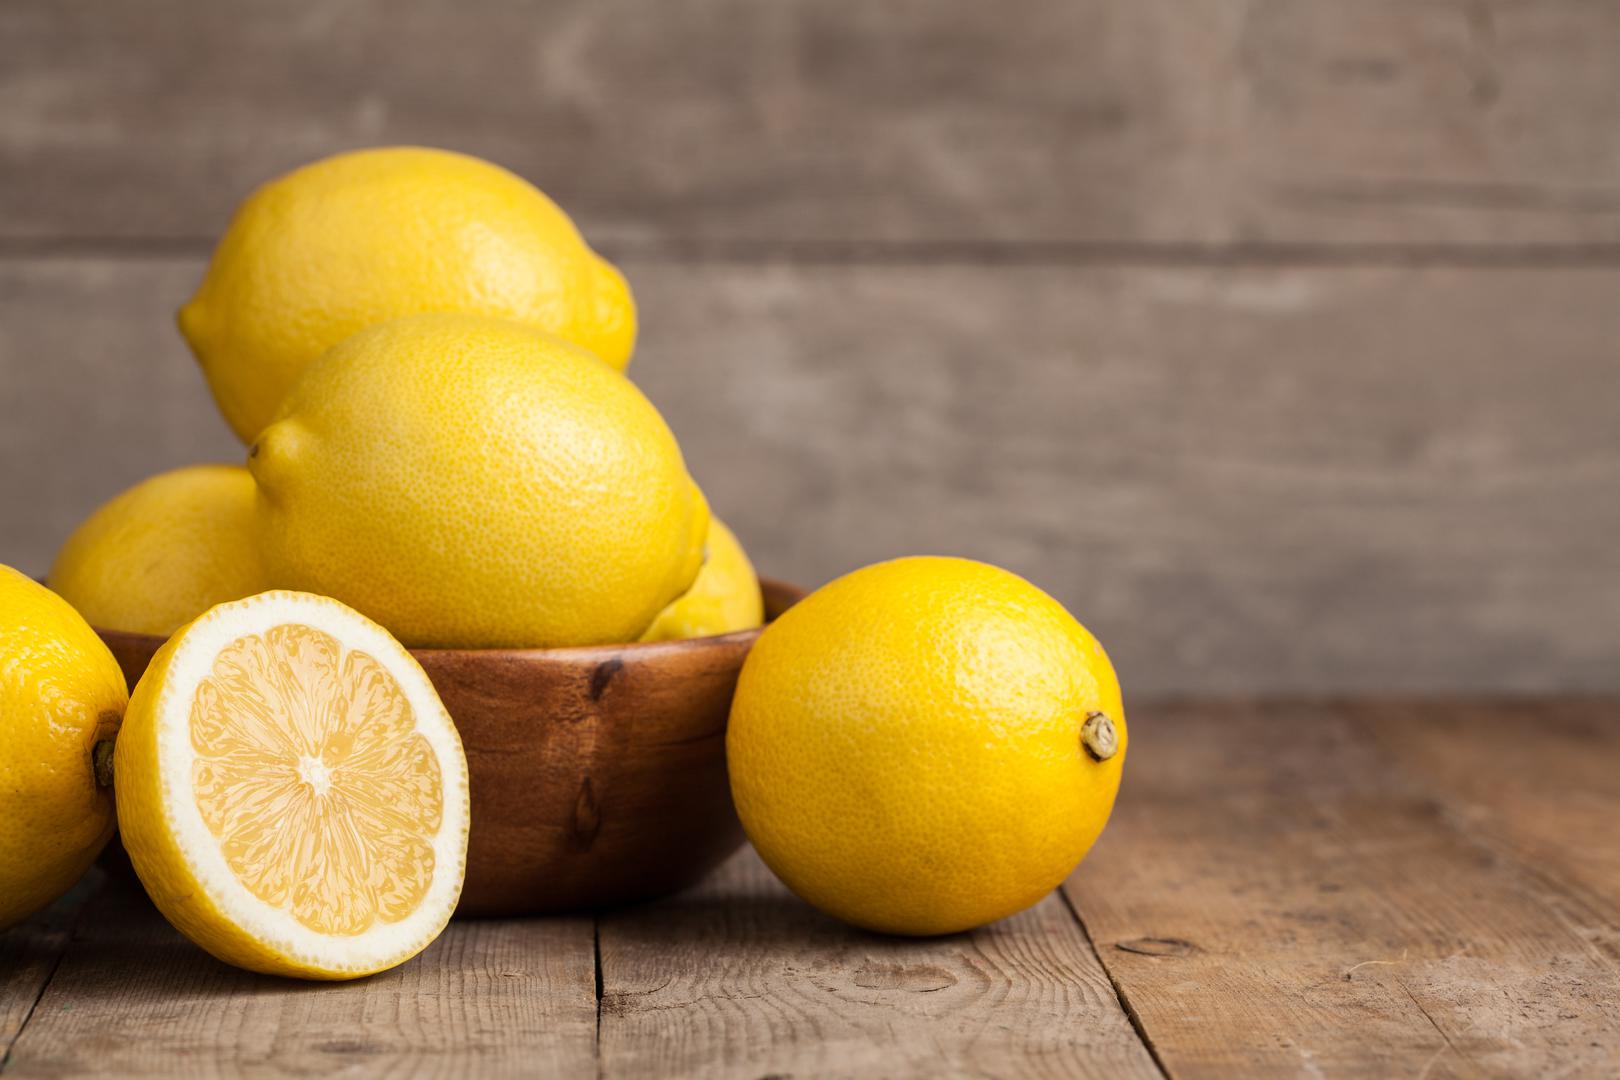 Citrusne kore: Jedan od najlakših načina korištenja limunovih kora je u drugim jelima. Da biste uživali u okusu limunovih kora, kombinirajte njihovu koricu sa soli kako biste stvorili aromatičnu citrusnu sol  za začiniti svoju omiljenu hranu. Također kore možete prokuhati u sirupu kako biste napravili kandirane kore.